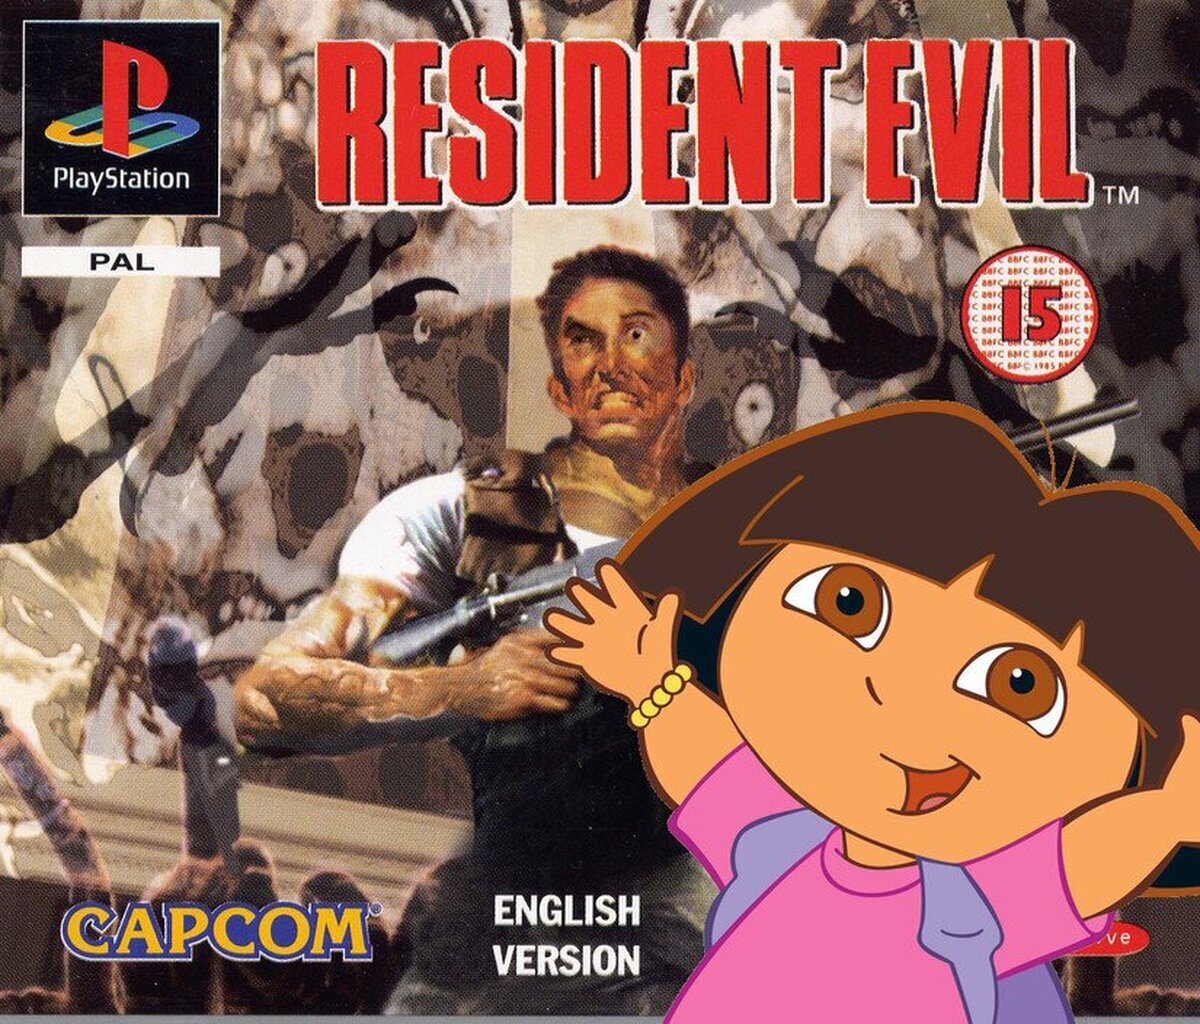 El primer Resident Evil iba a salir para Super Nintendo con un aspecto muy distinto al que imaginas